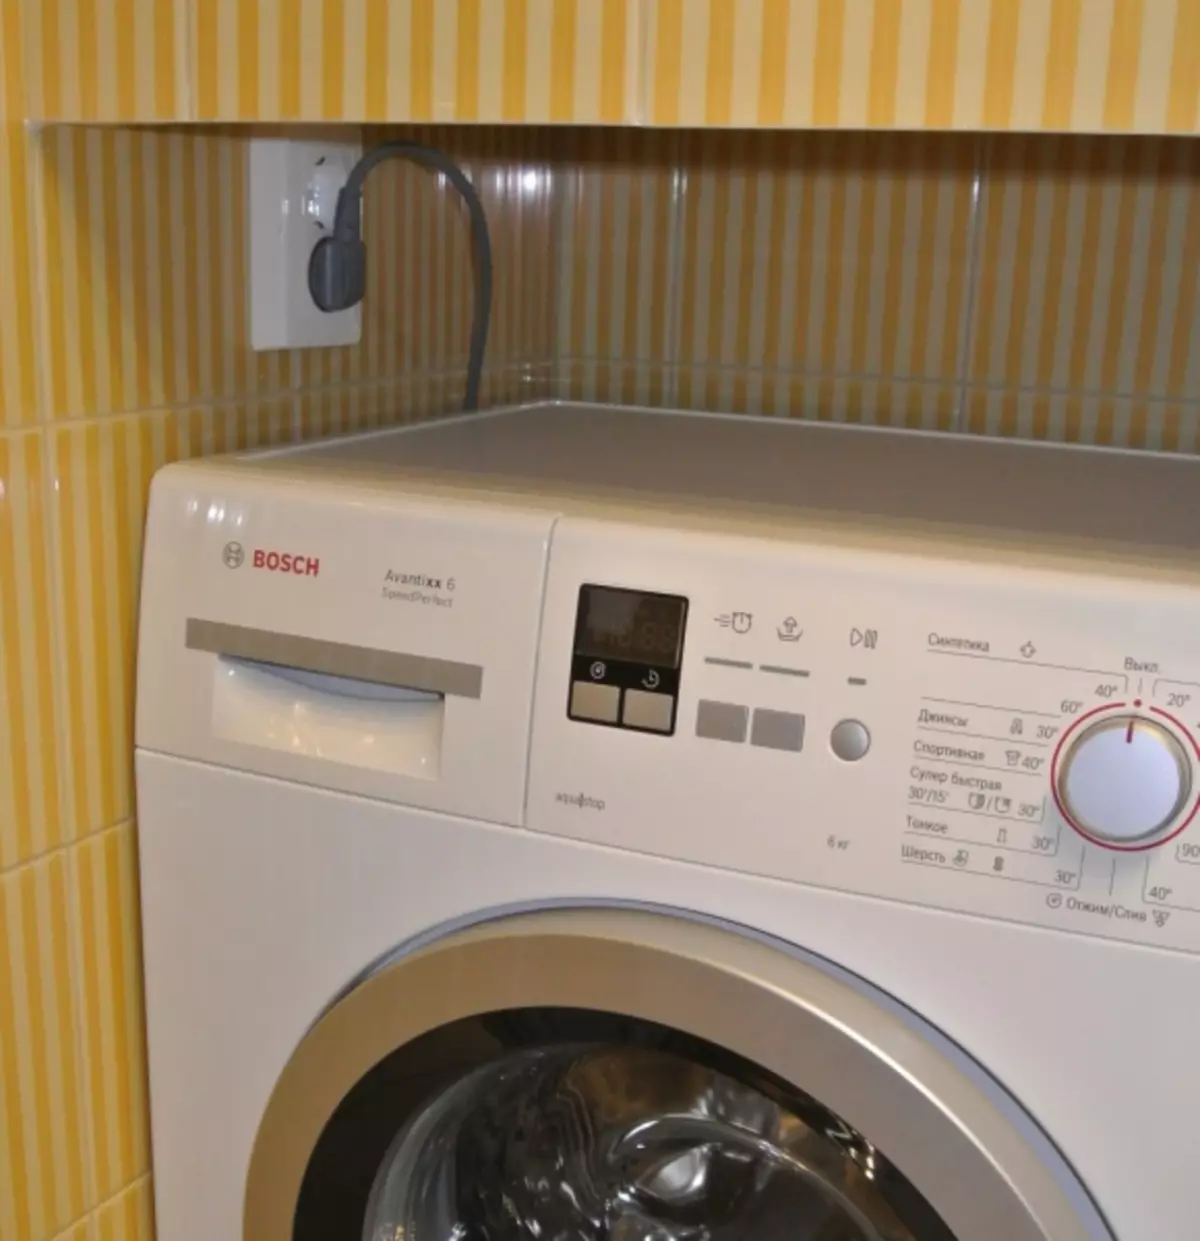 Installatie van de wasmachine: selectie van locatie en functies van de verbinding